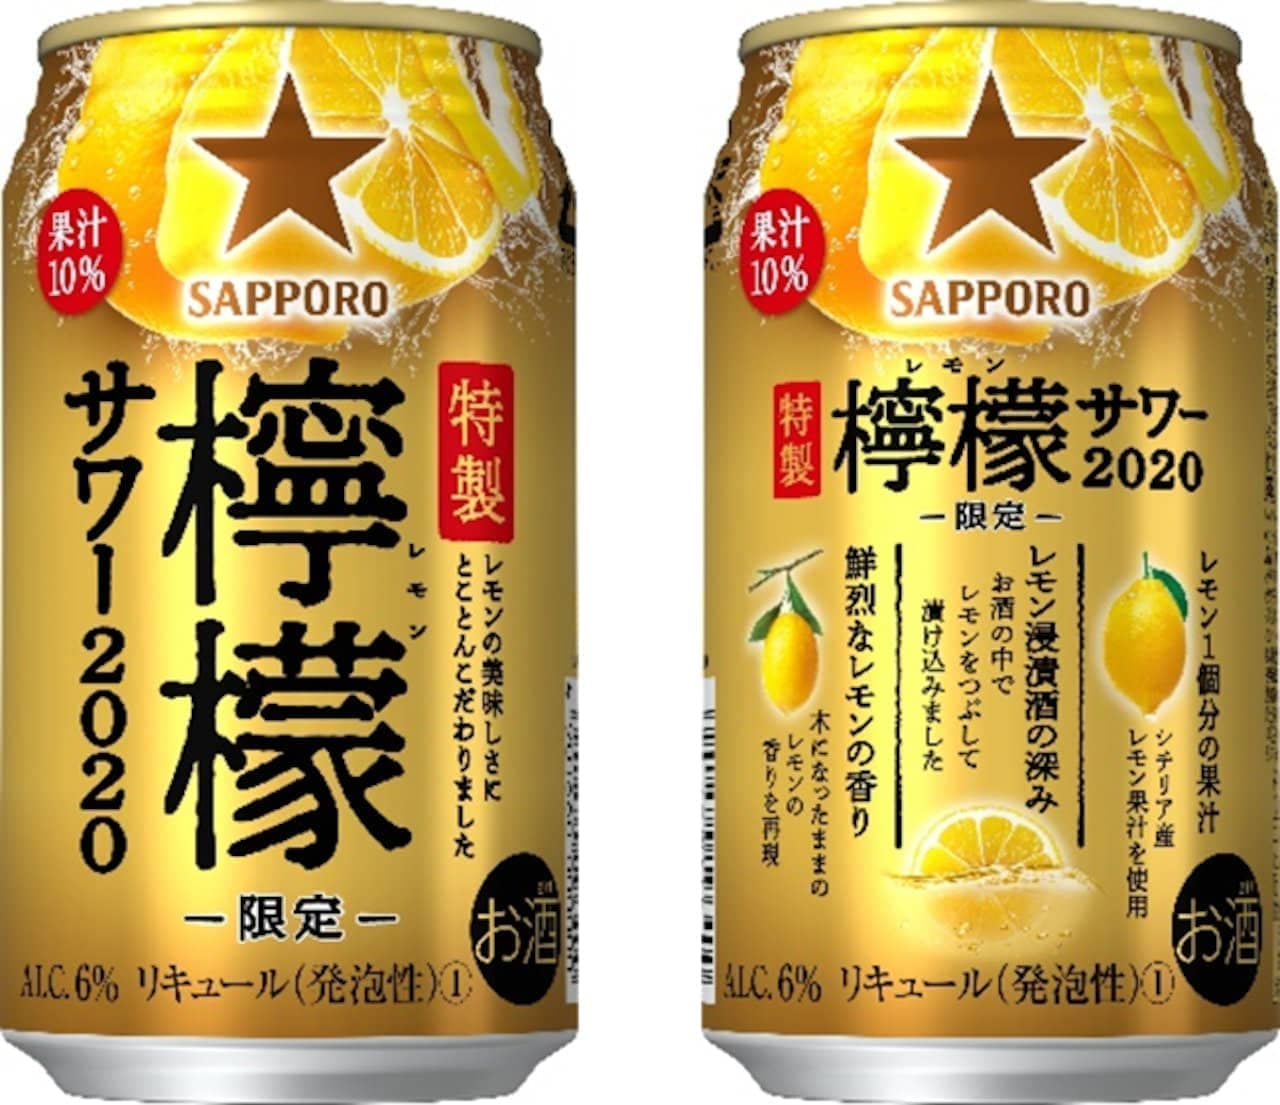 "Sapporo Special Lemon Sour 2020" Limited quantity